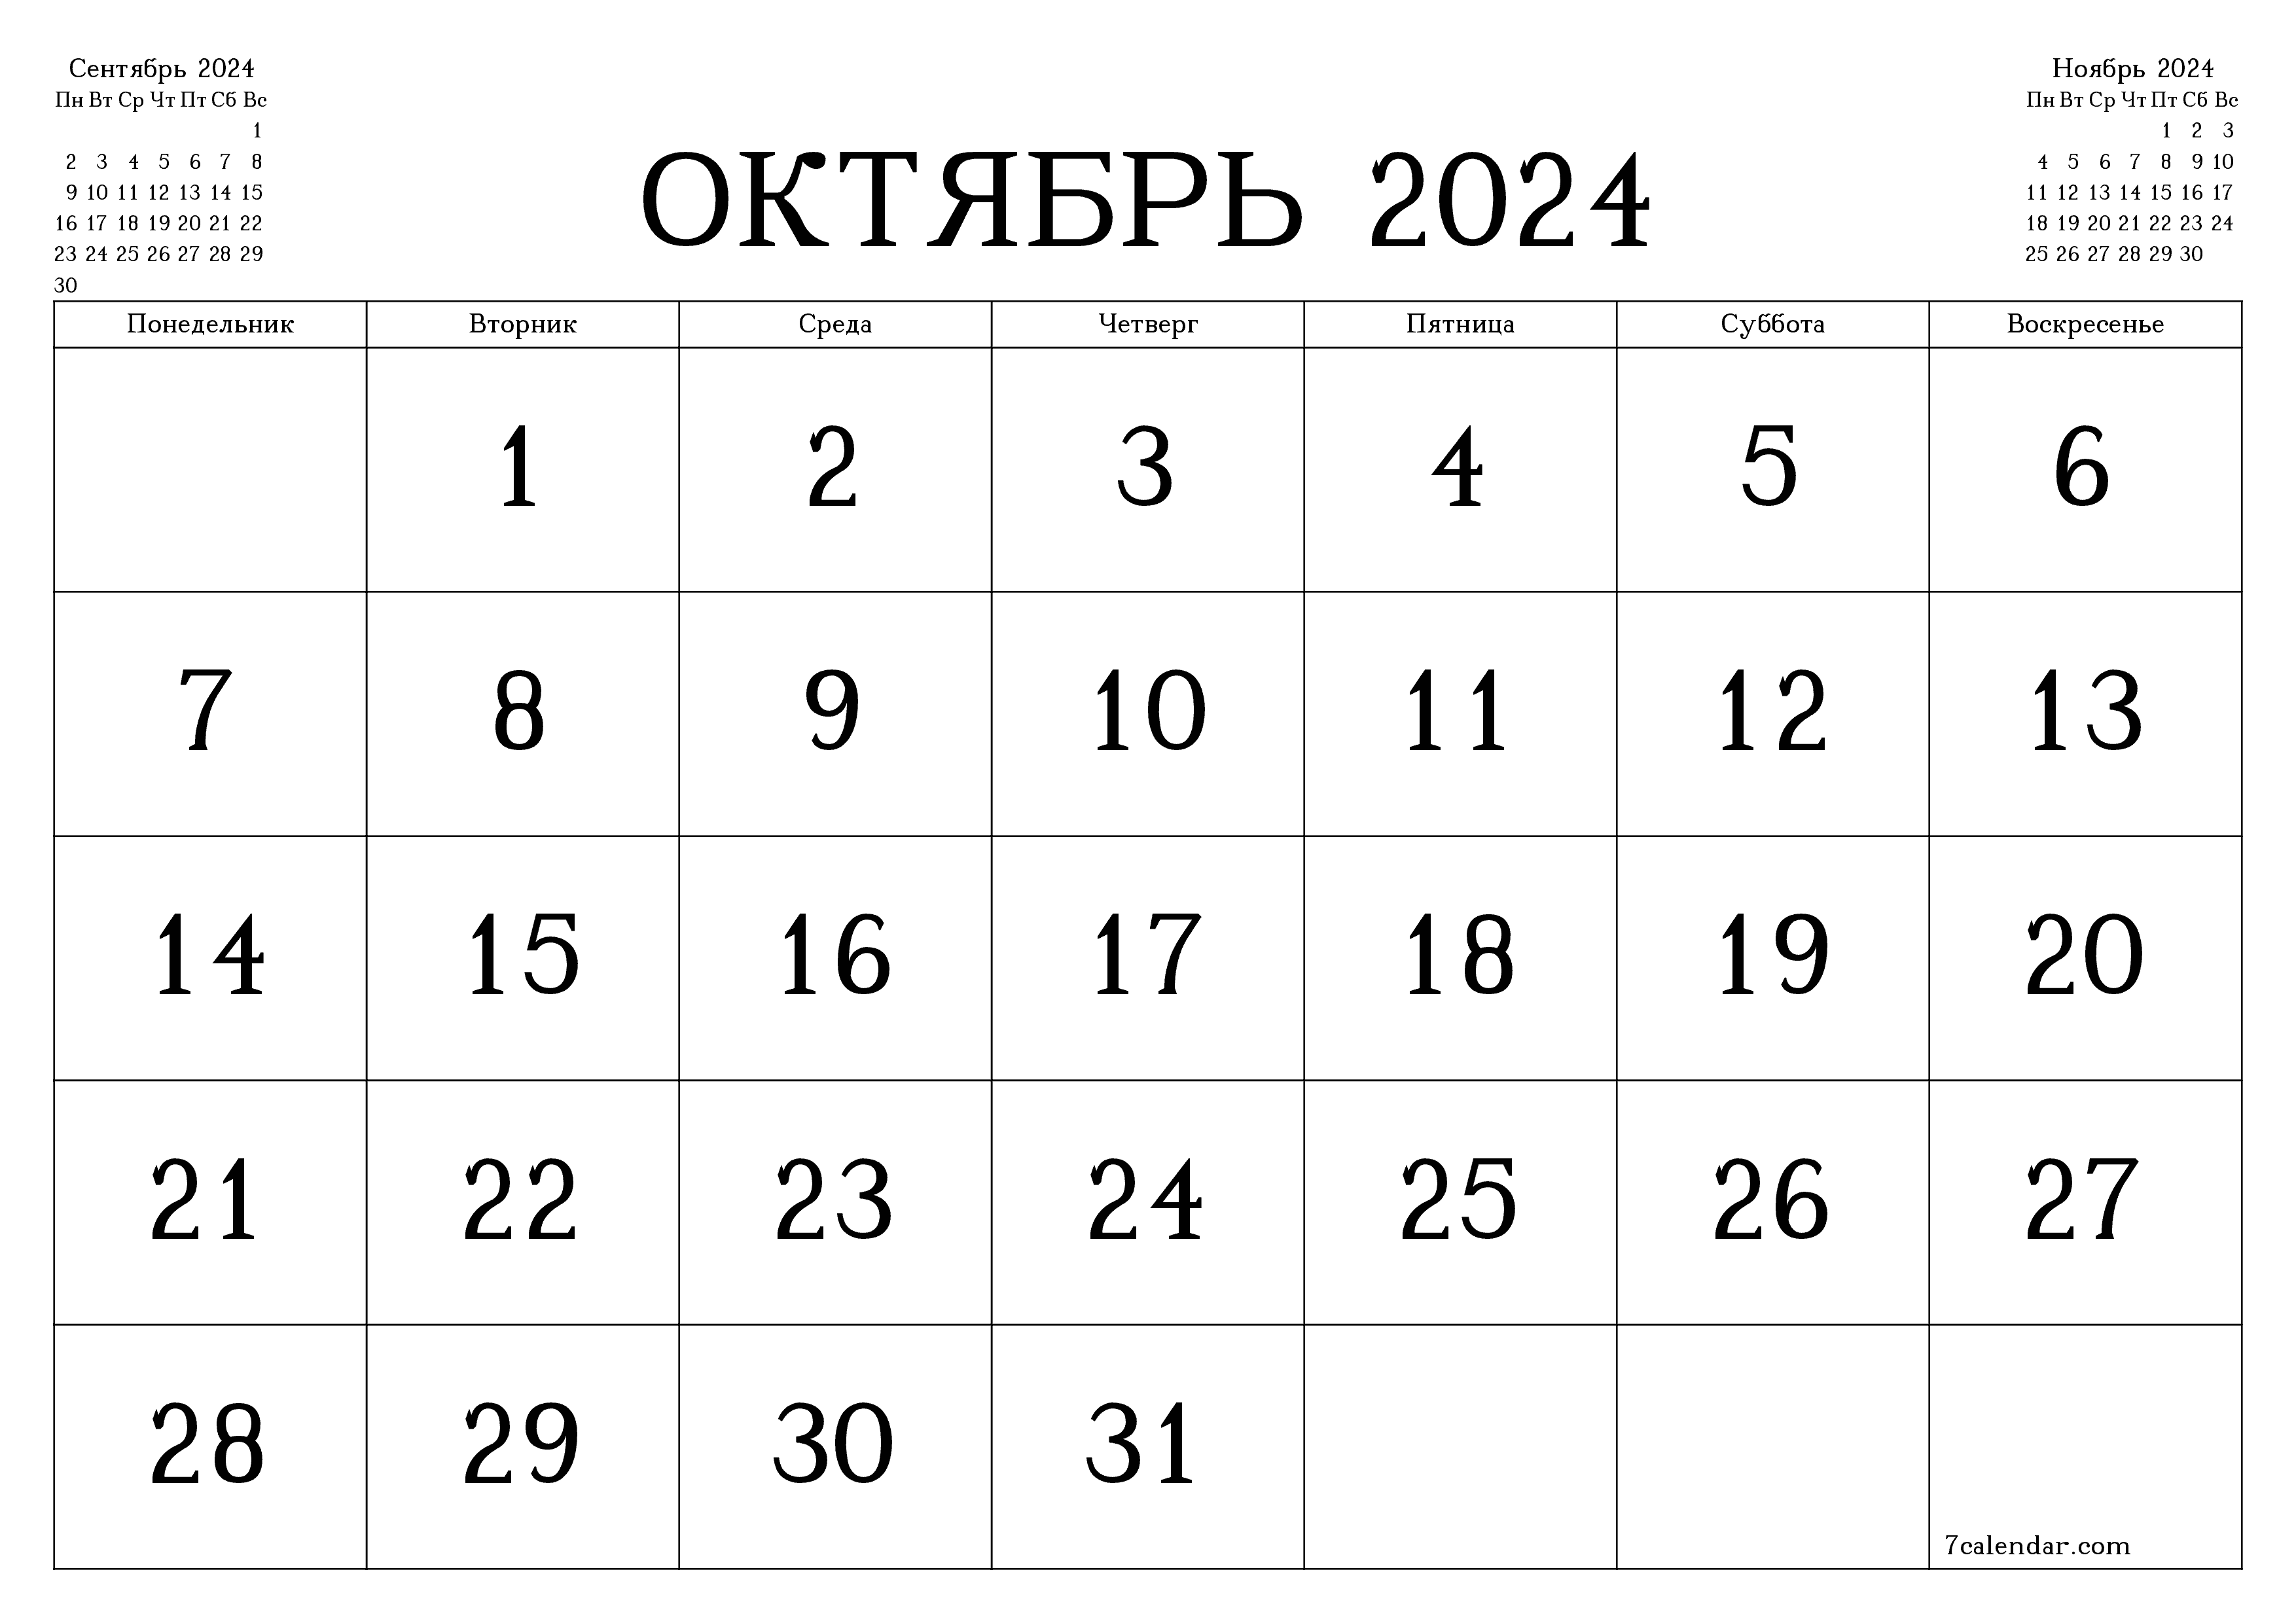 Календари и планеры для печати Октябрь 2024 A4, A3 в PDF и PNG - 7calendar